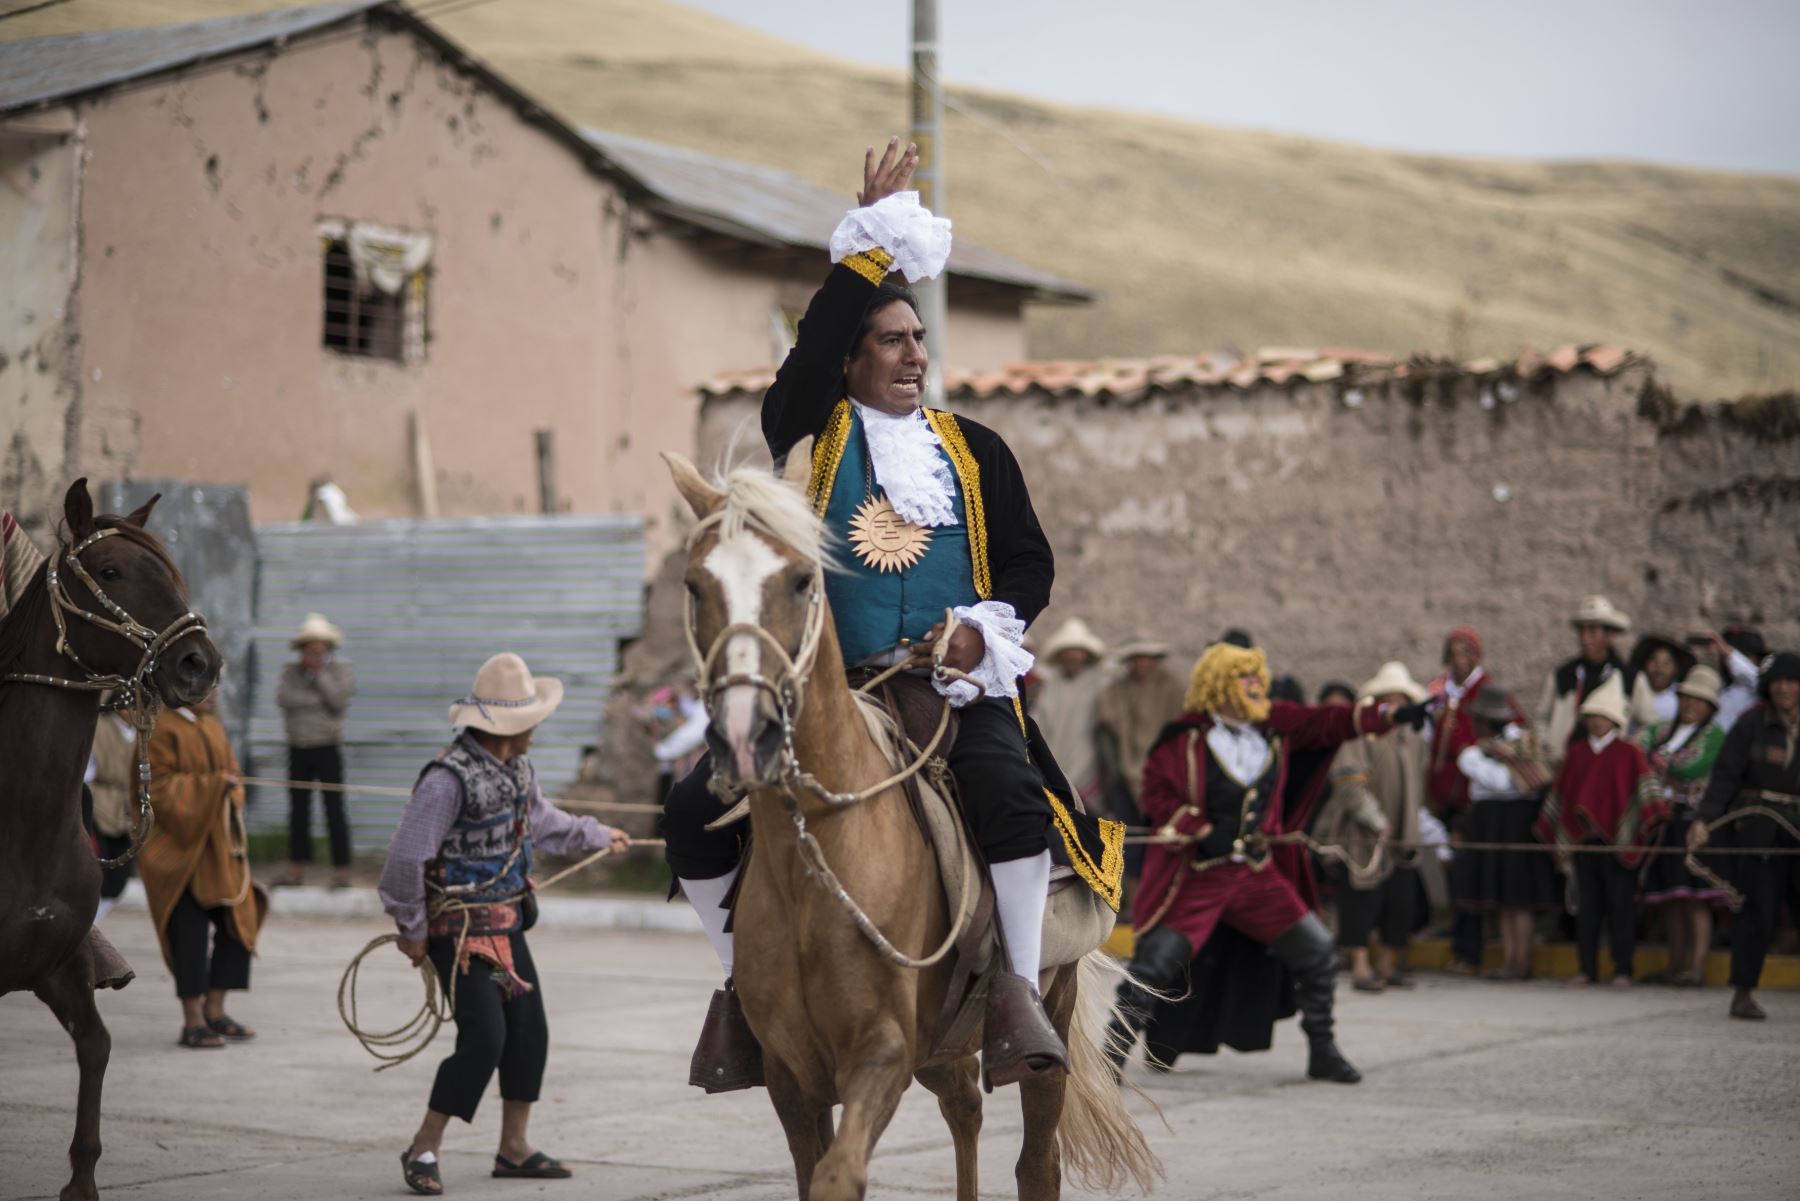 Conmemoración de los 239 años de la rebelión de Túpac Amaru II y Micaela Bastidas en Tungasuca, Cuzco. Foto: Difusión